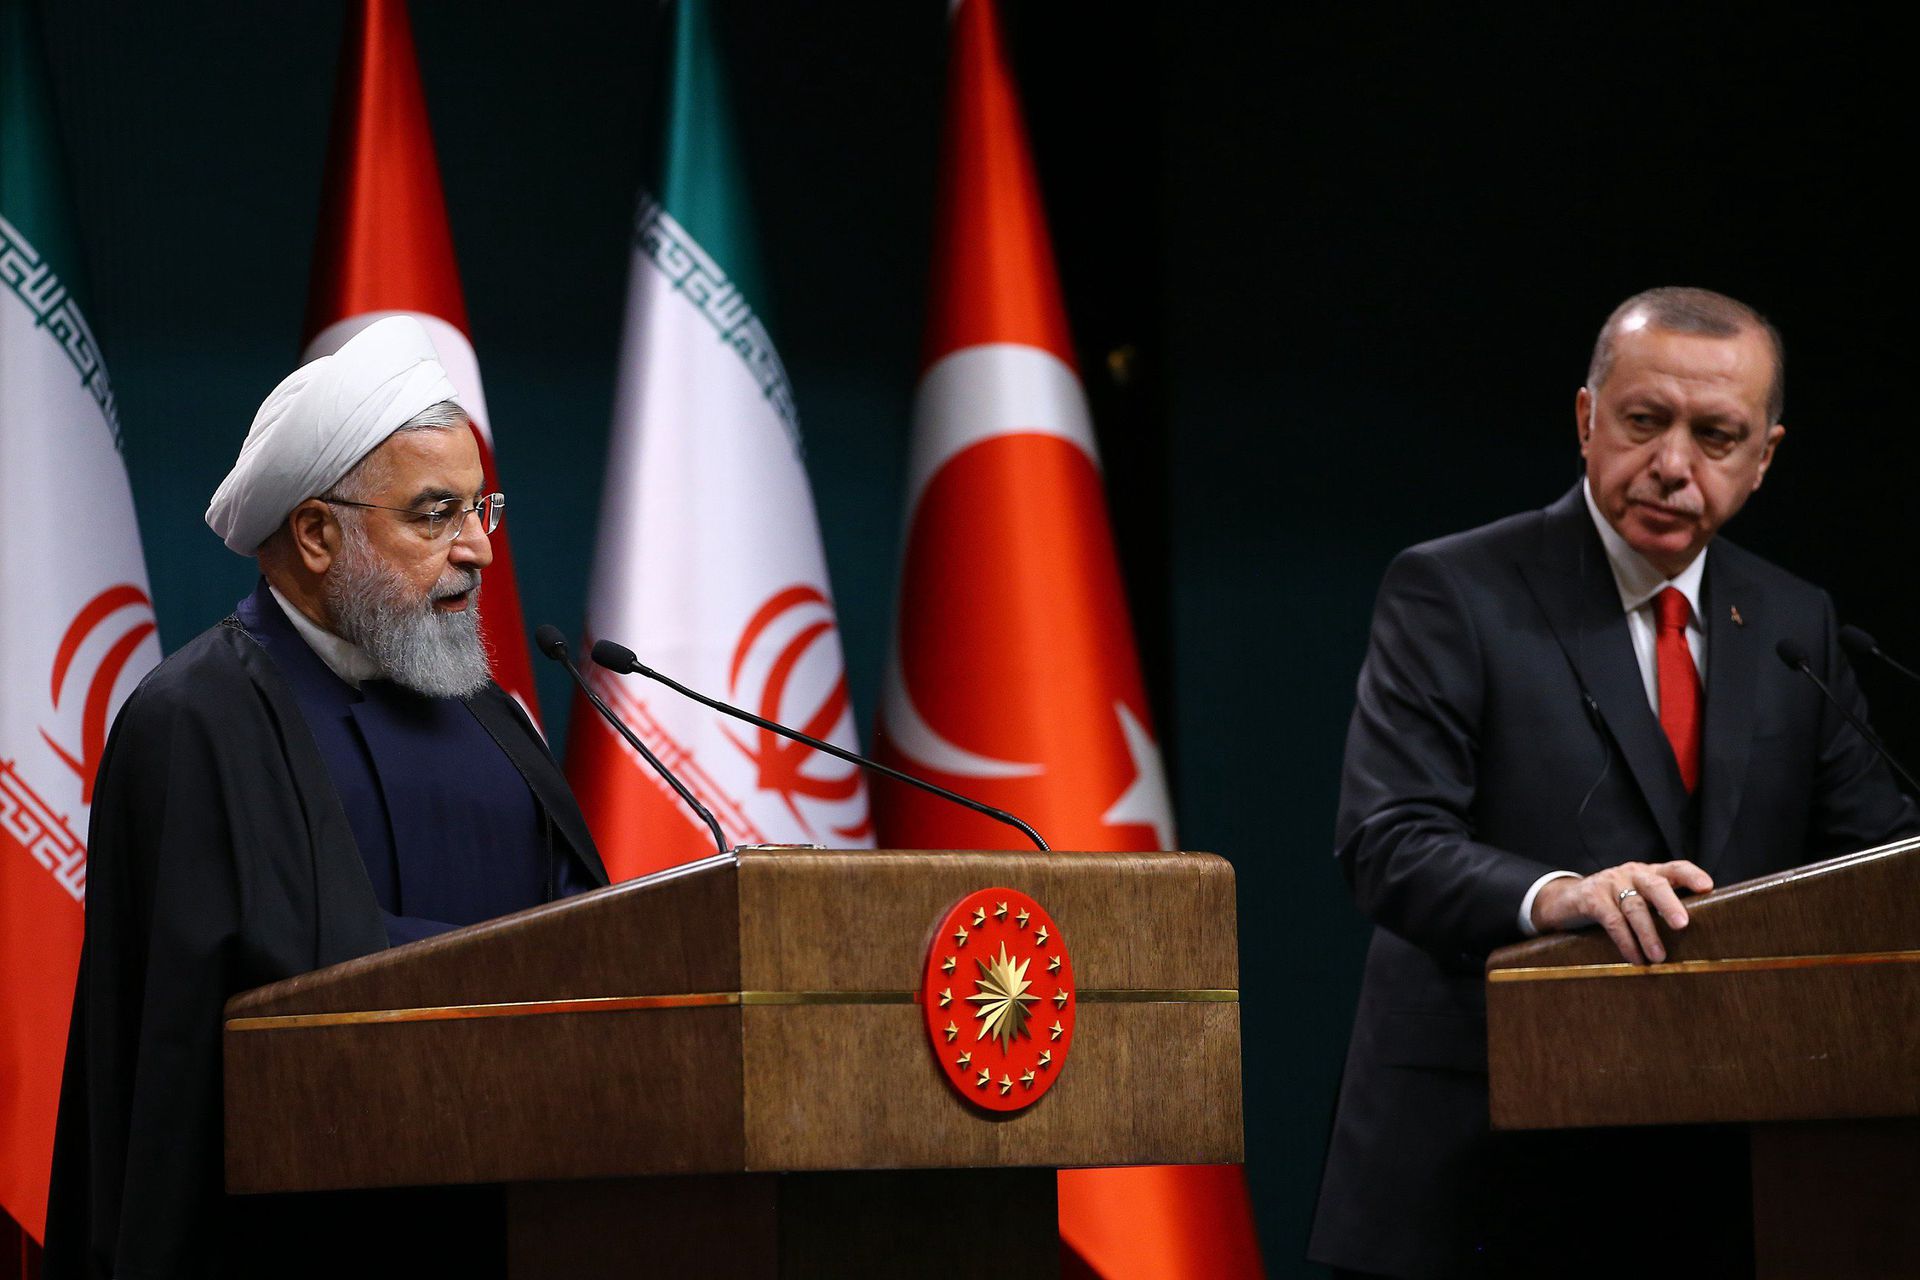 2018年12月20日，土耳其安卡拉，伊朗总统鲁哈尼访问土耳其，与土耳其总统埃尔多安会晤。双方出席土伊高级别合作委员会第五次会议后出席新闻发布会。据报道，鲁哈尼率领高级政经代表团对土耳其进行为期2天的访问。 （VCG）